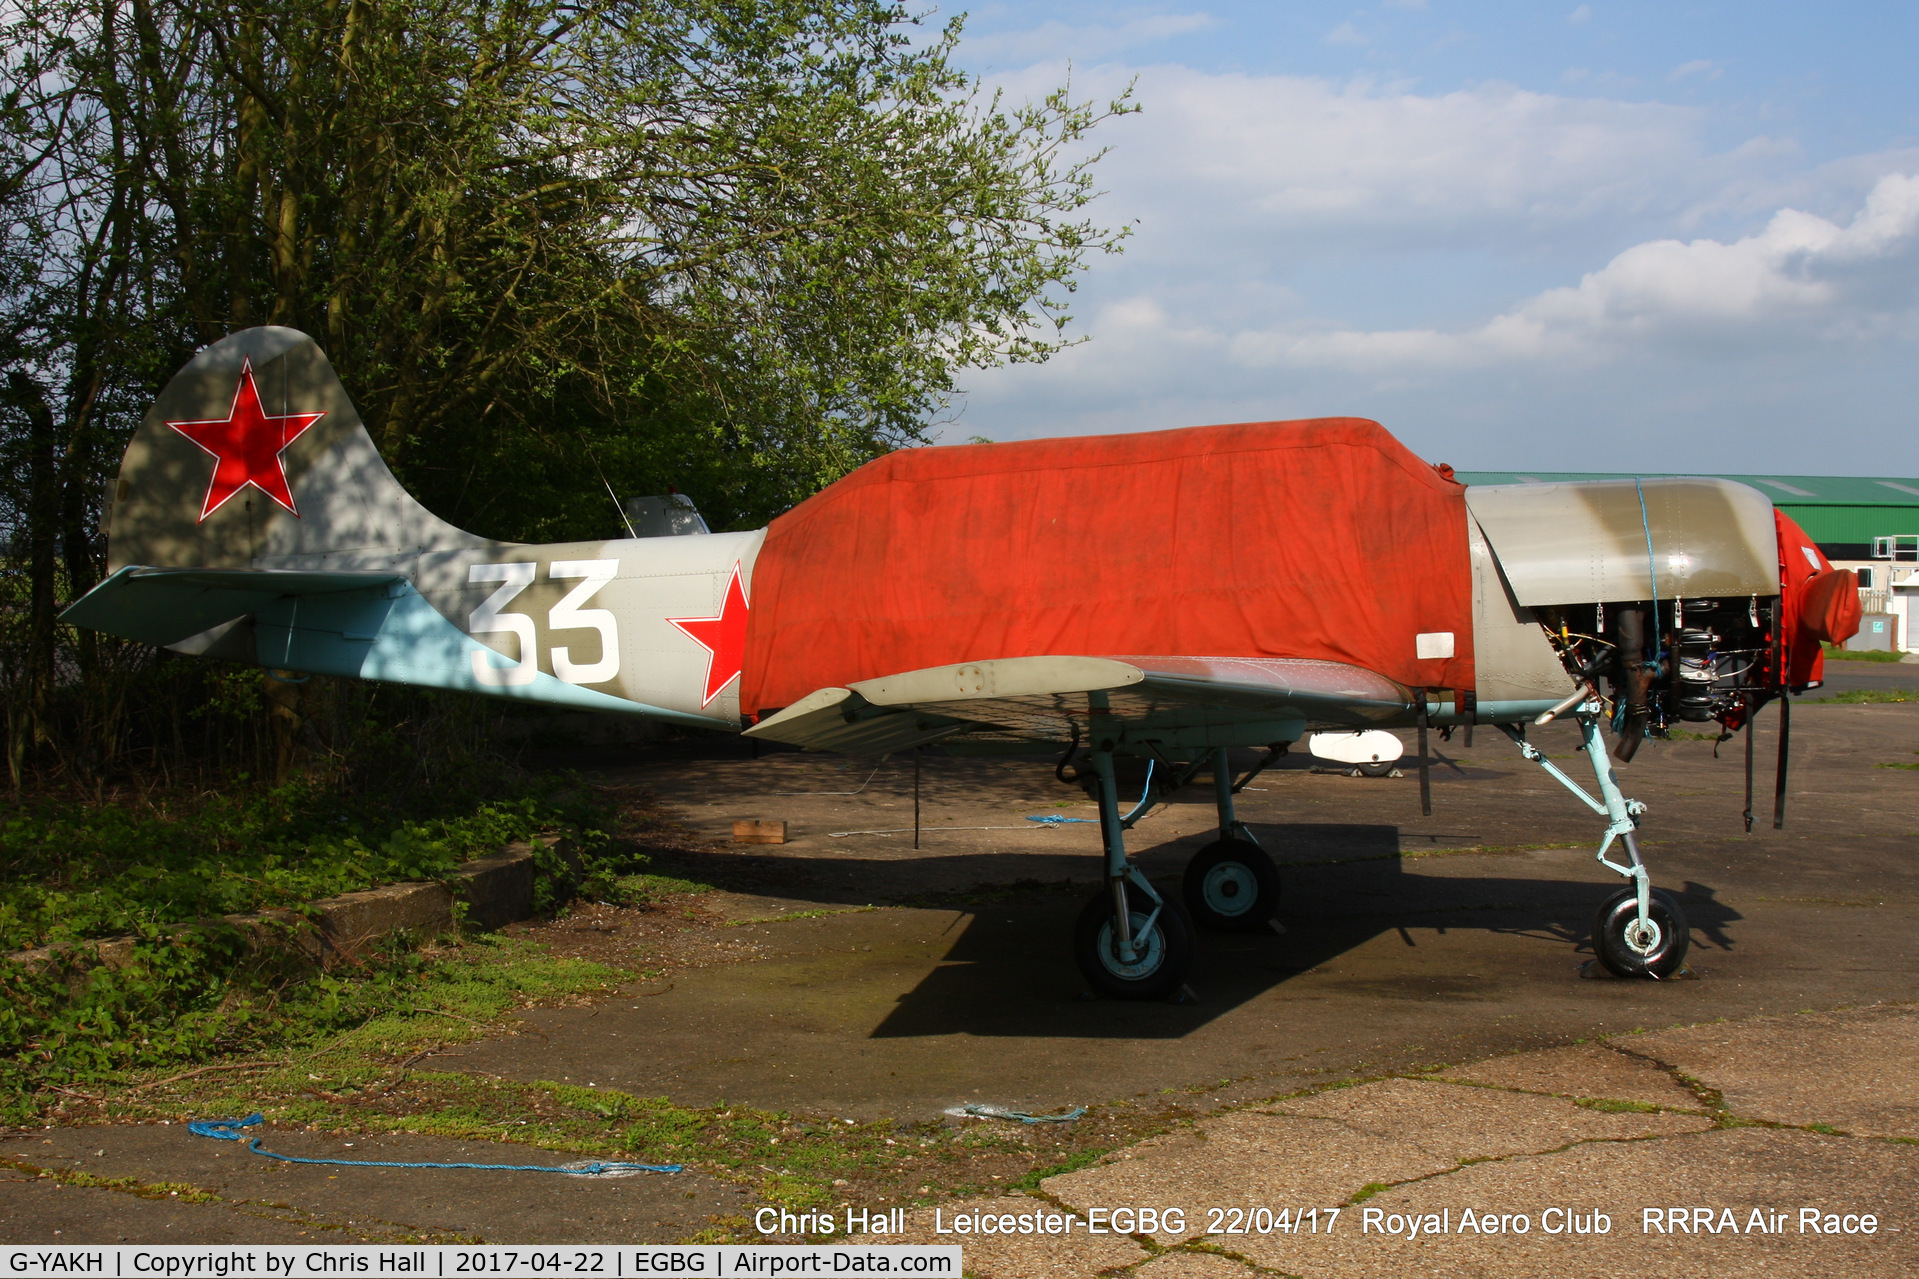 G-YAKH, 1989 Bacau Yak-52 C/N 899915, at Leicester